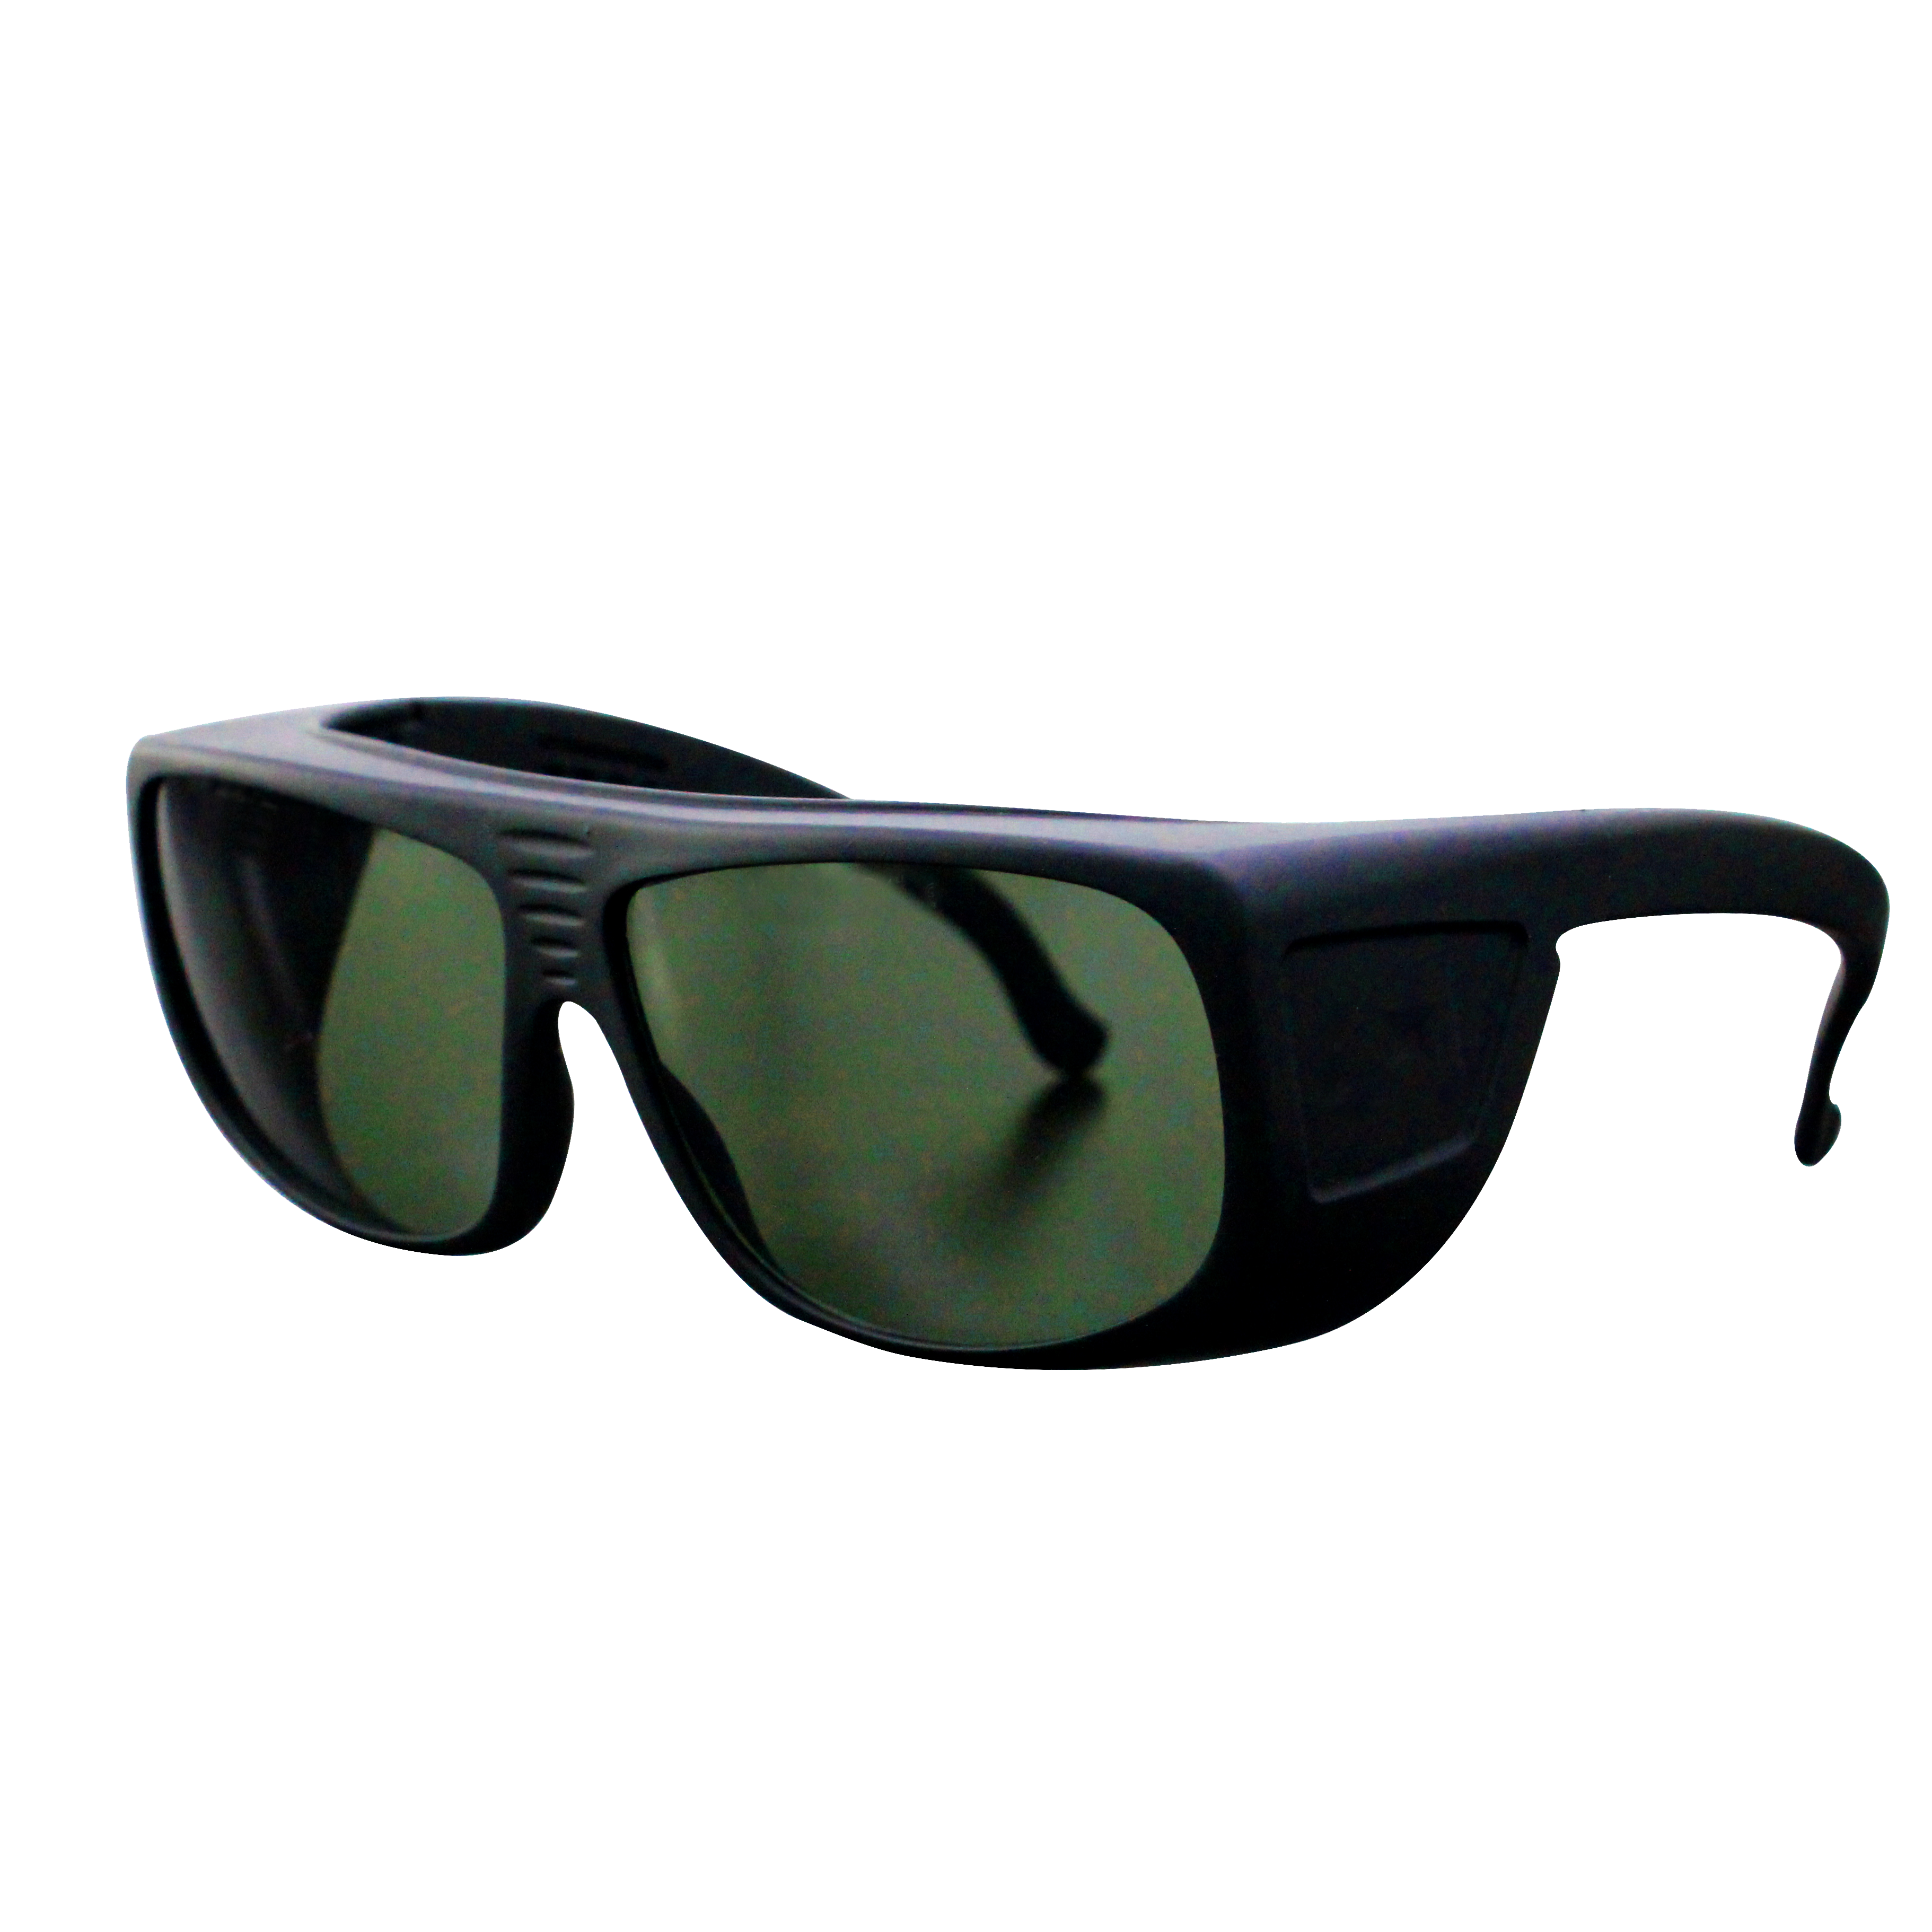 NOUALASER OD7+ 1064nm fiber laser UV Safety Goggles